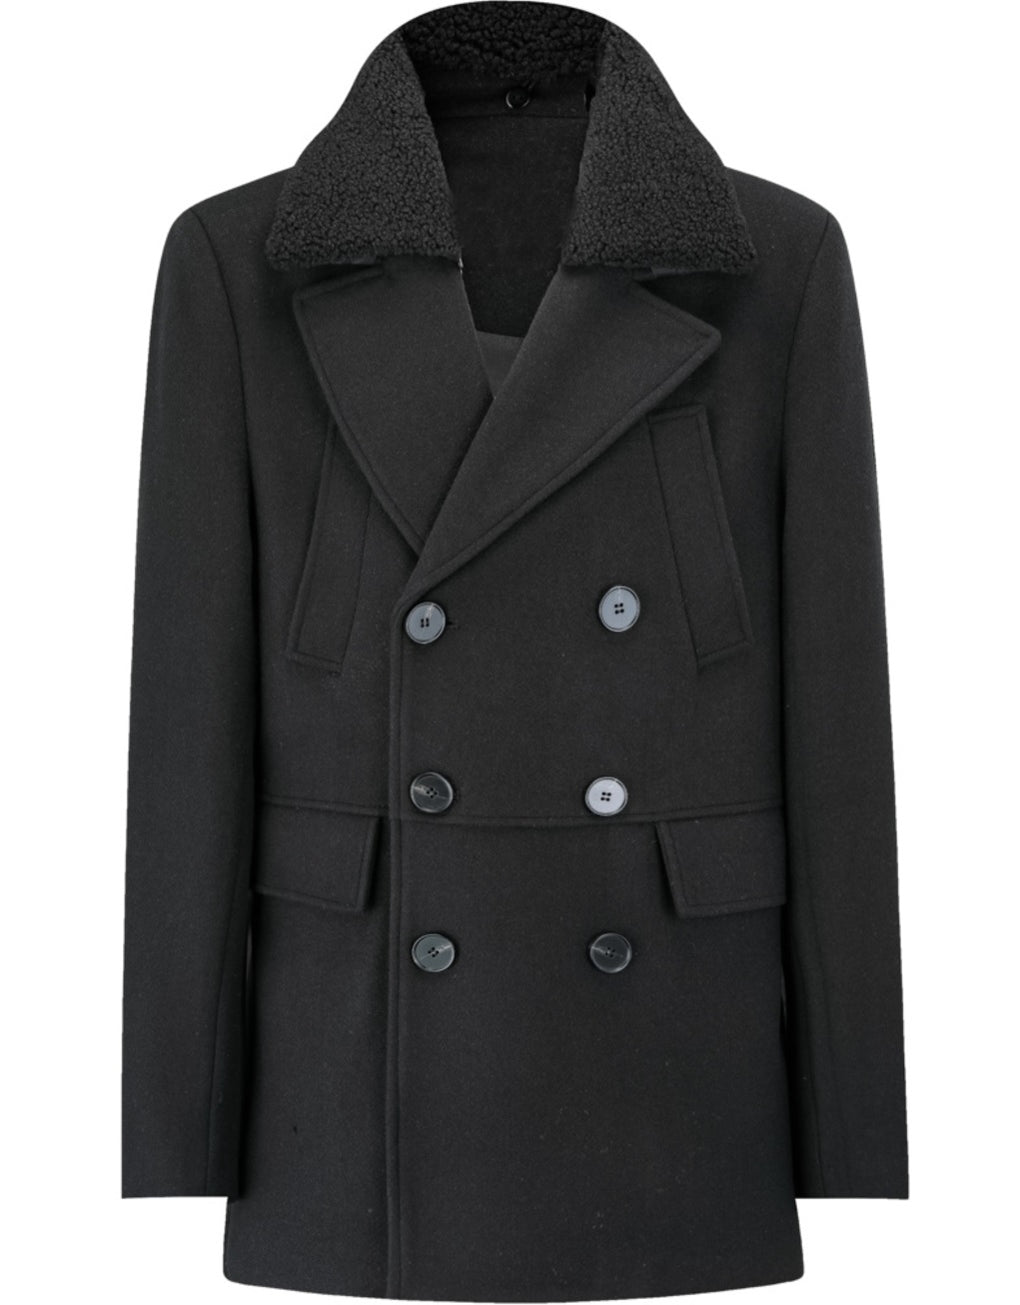 Coat Jacket